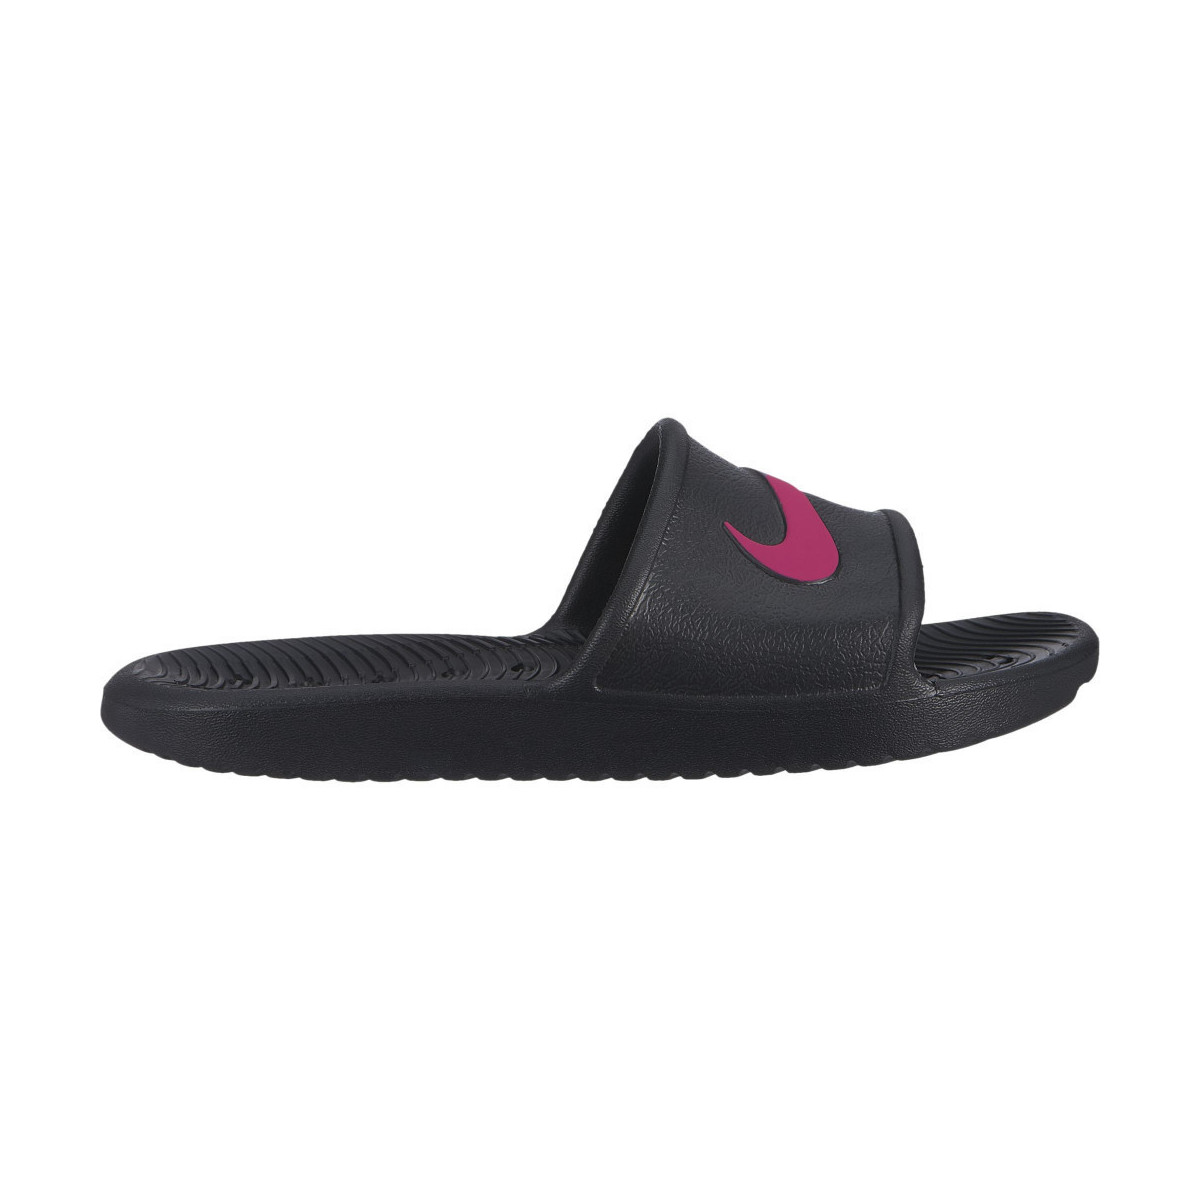 Chaussures Enfant Sandales et Nu-pieds Nike kawa shower (gs/ps) Noir